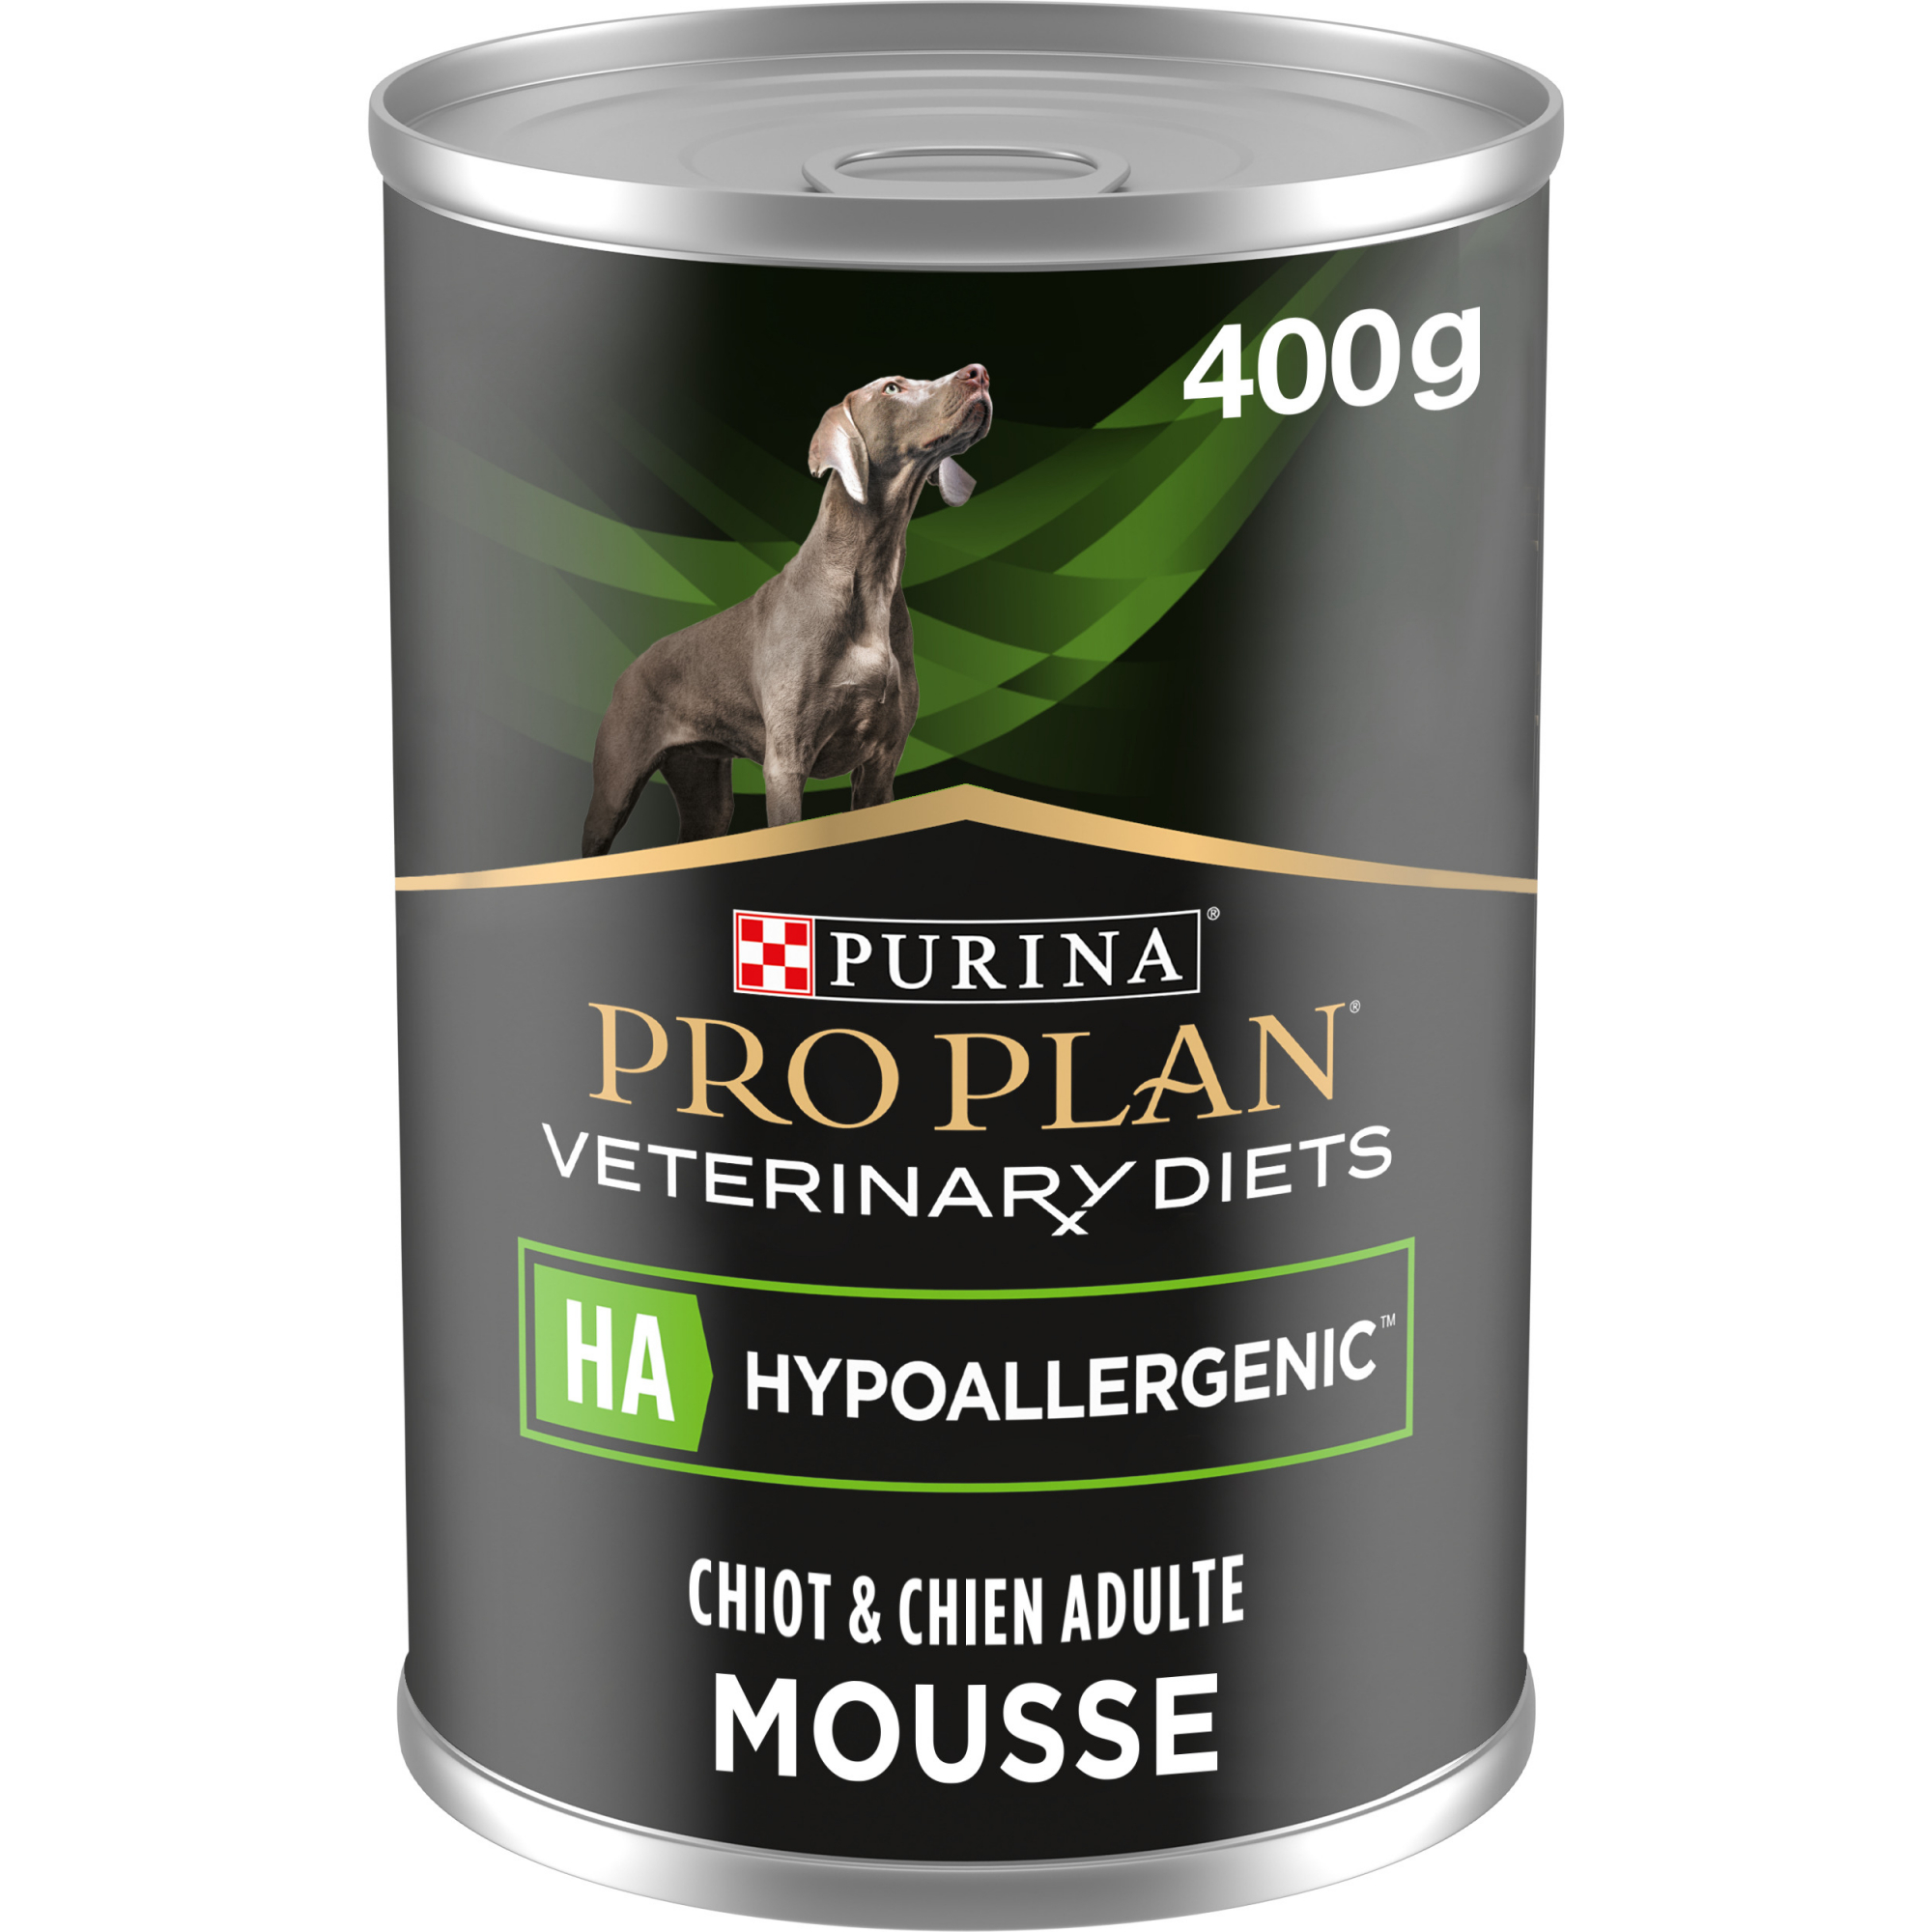 Purina Pro Plan Veterinary Diets HA Hypoallergenic pâtée pour chiot et chien adulte